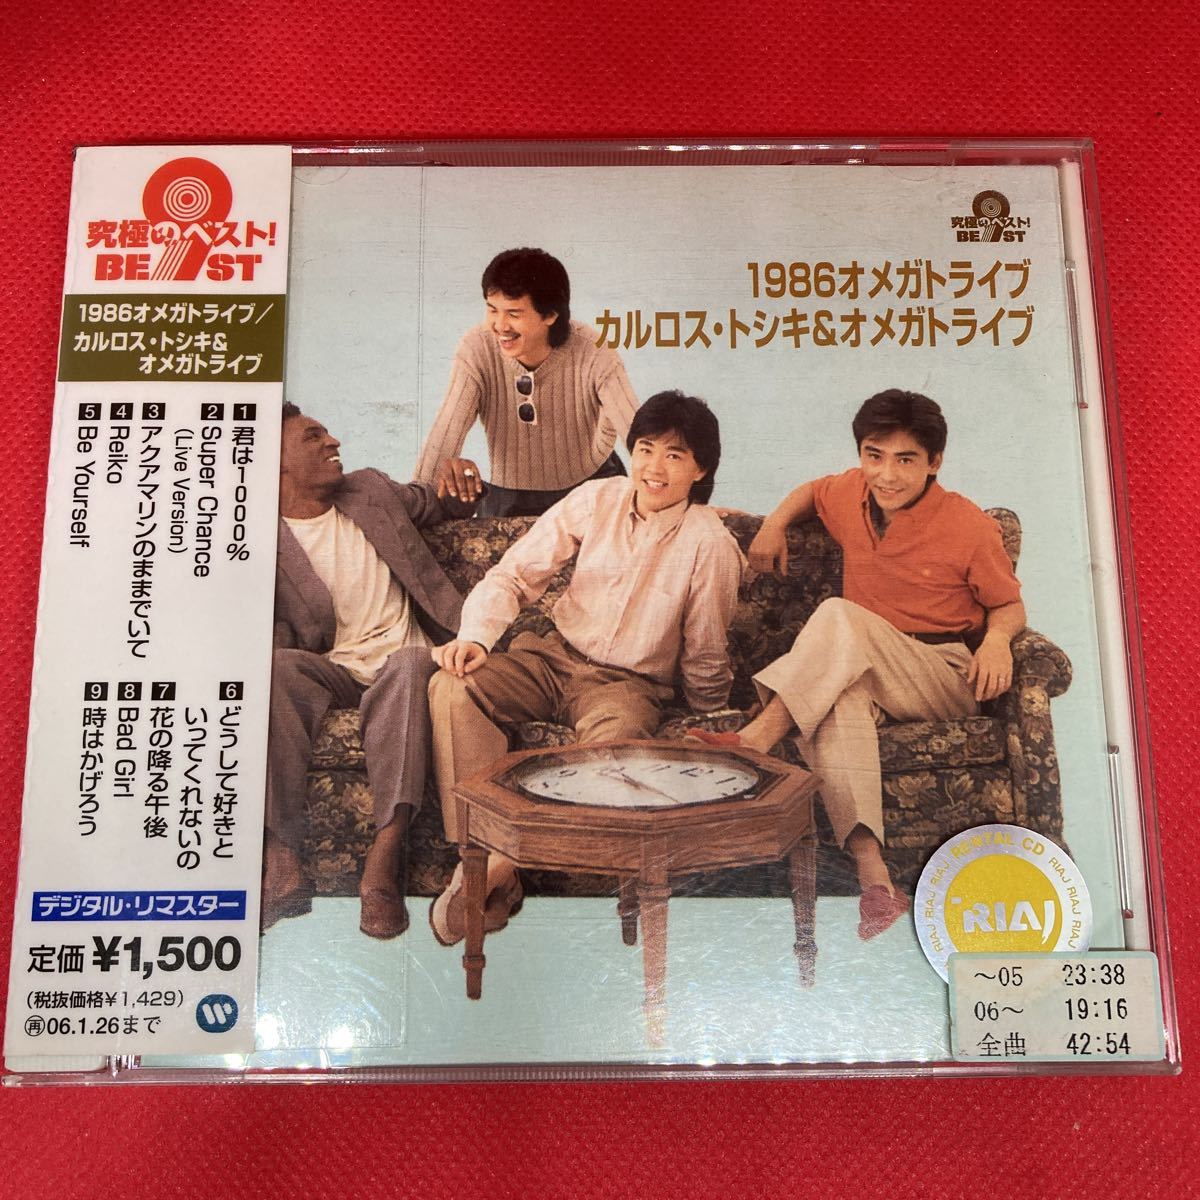 【ベスト盤】1986オメガトライブ/カルロス・トシキ&オメガトライブ 究極のベスト! / CD ベストアルバム_画像1